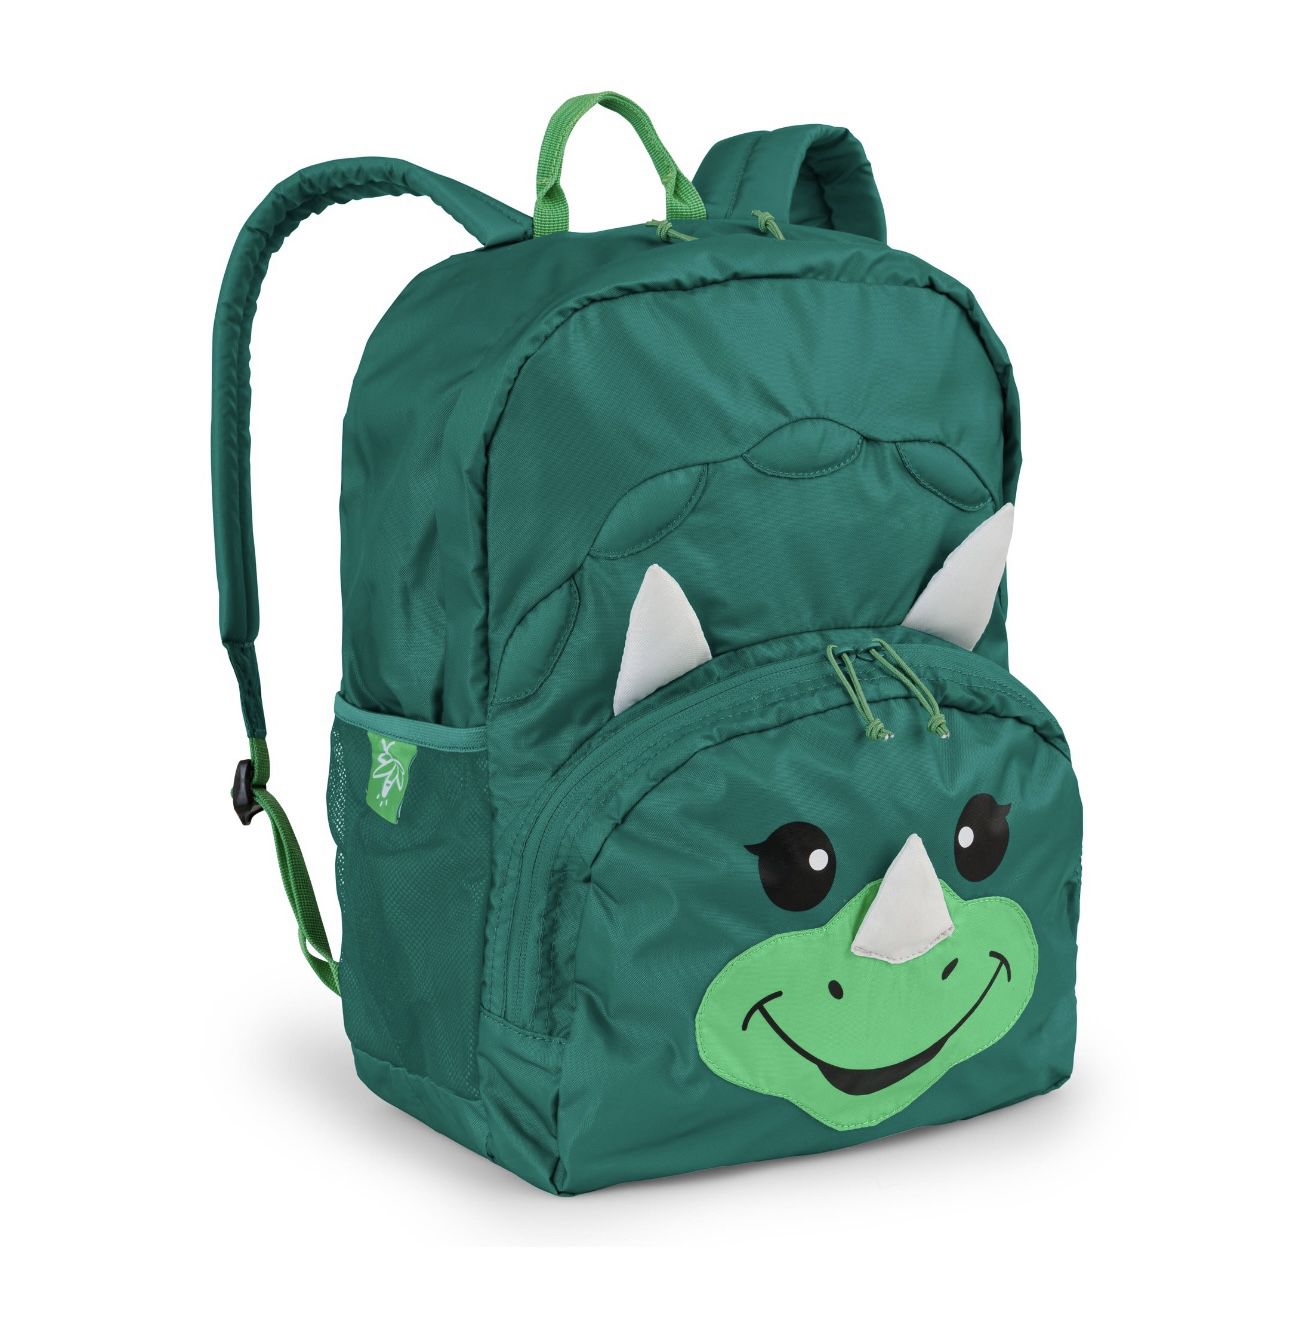 Firefly Dinosaur Kids Backpack